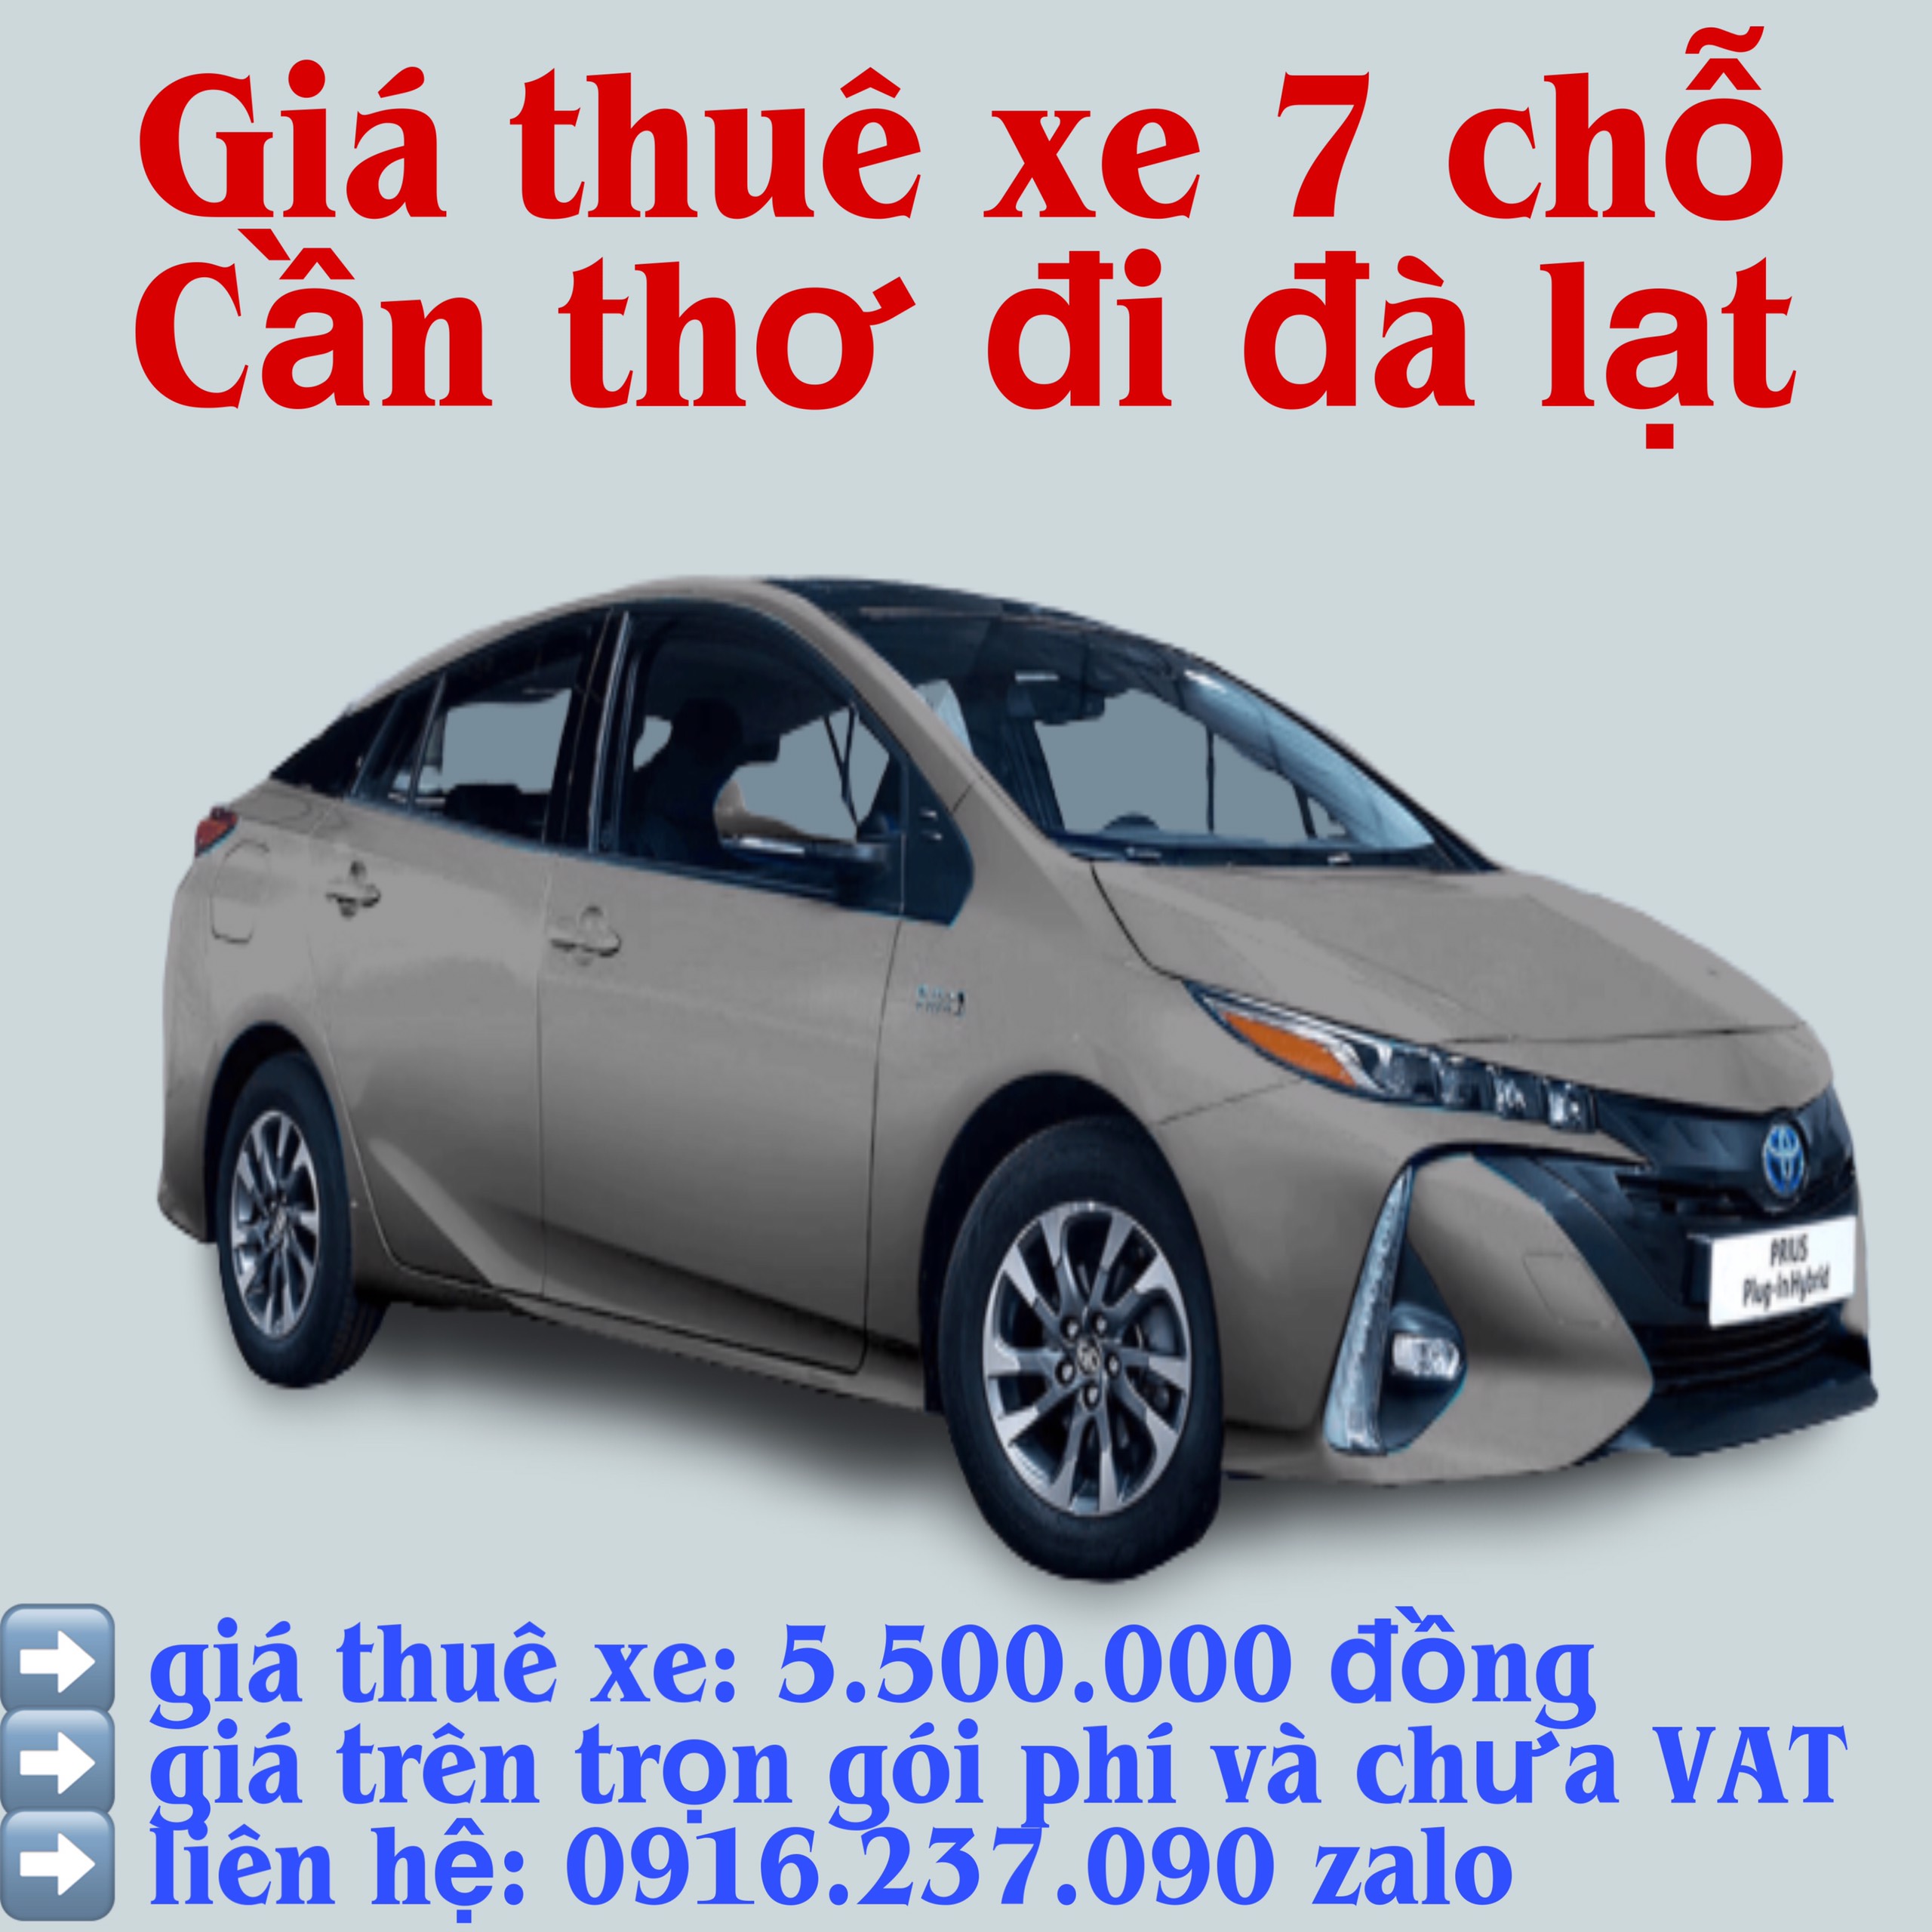 Thuê xe Cần Thơ - Đà Lạt - Thuê xe Cần Thơ Bách Việt